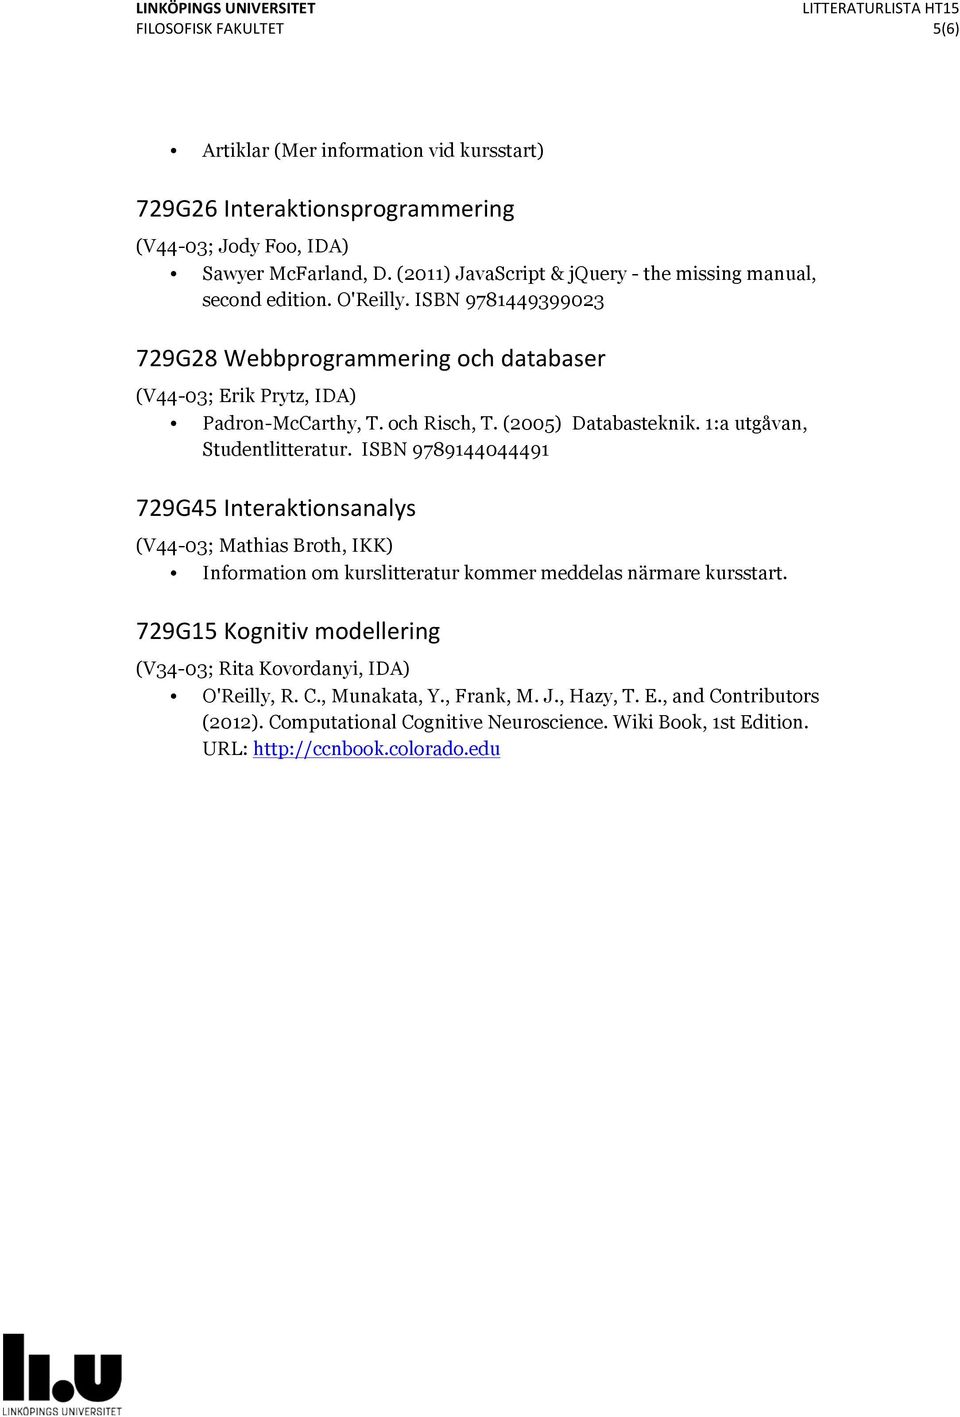 och Risch, T. (2005) Databasteknik. 1:a utgåvan, Studentlitteratur.